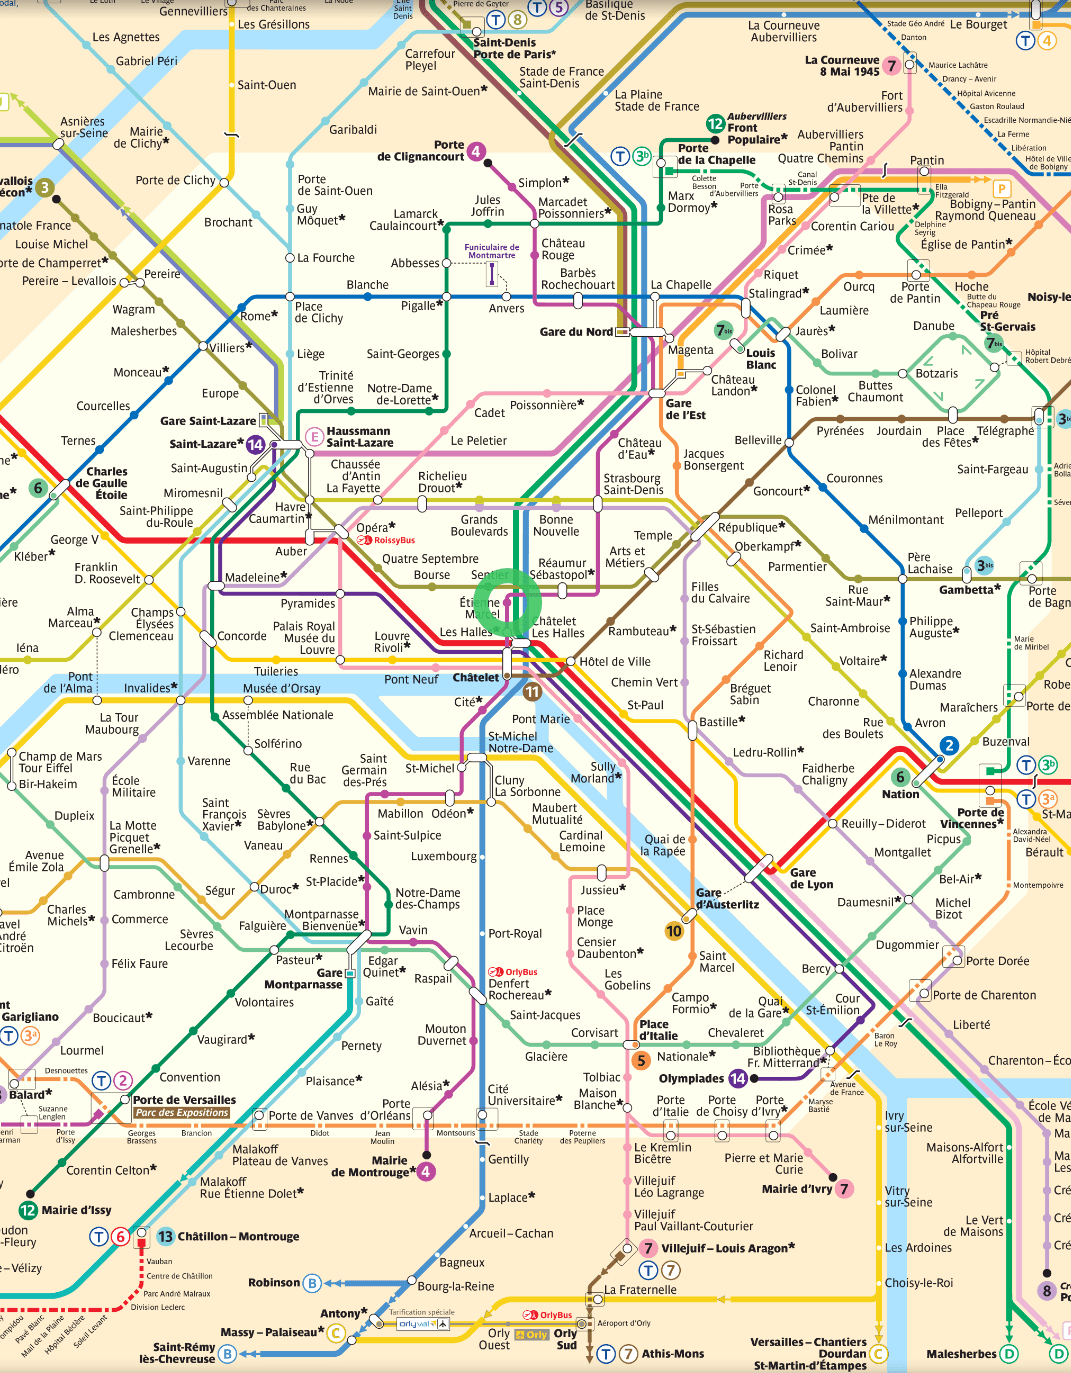 Comment prendre le métro sans ticket ?